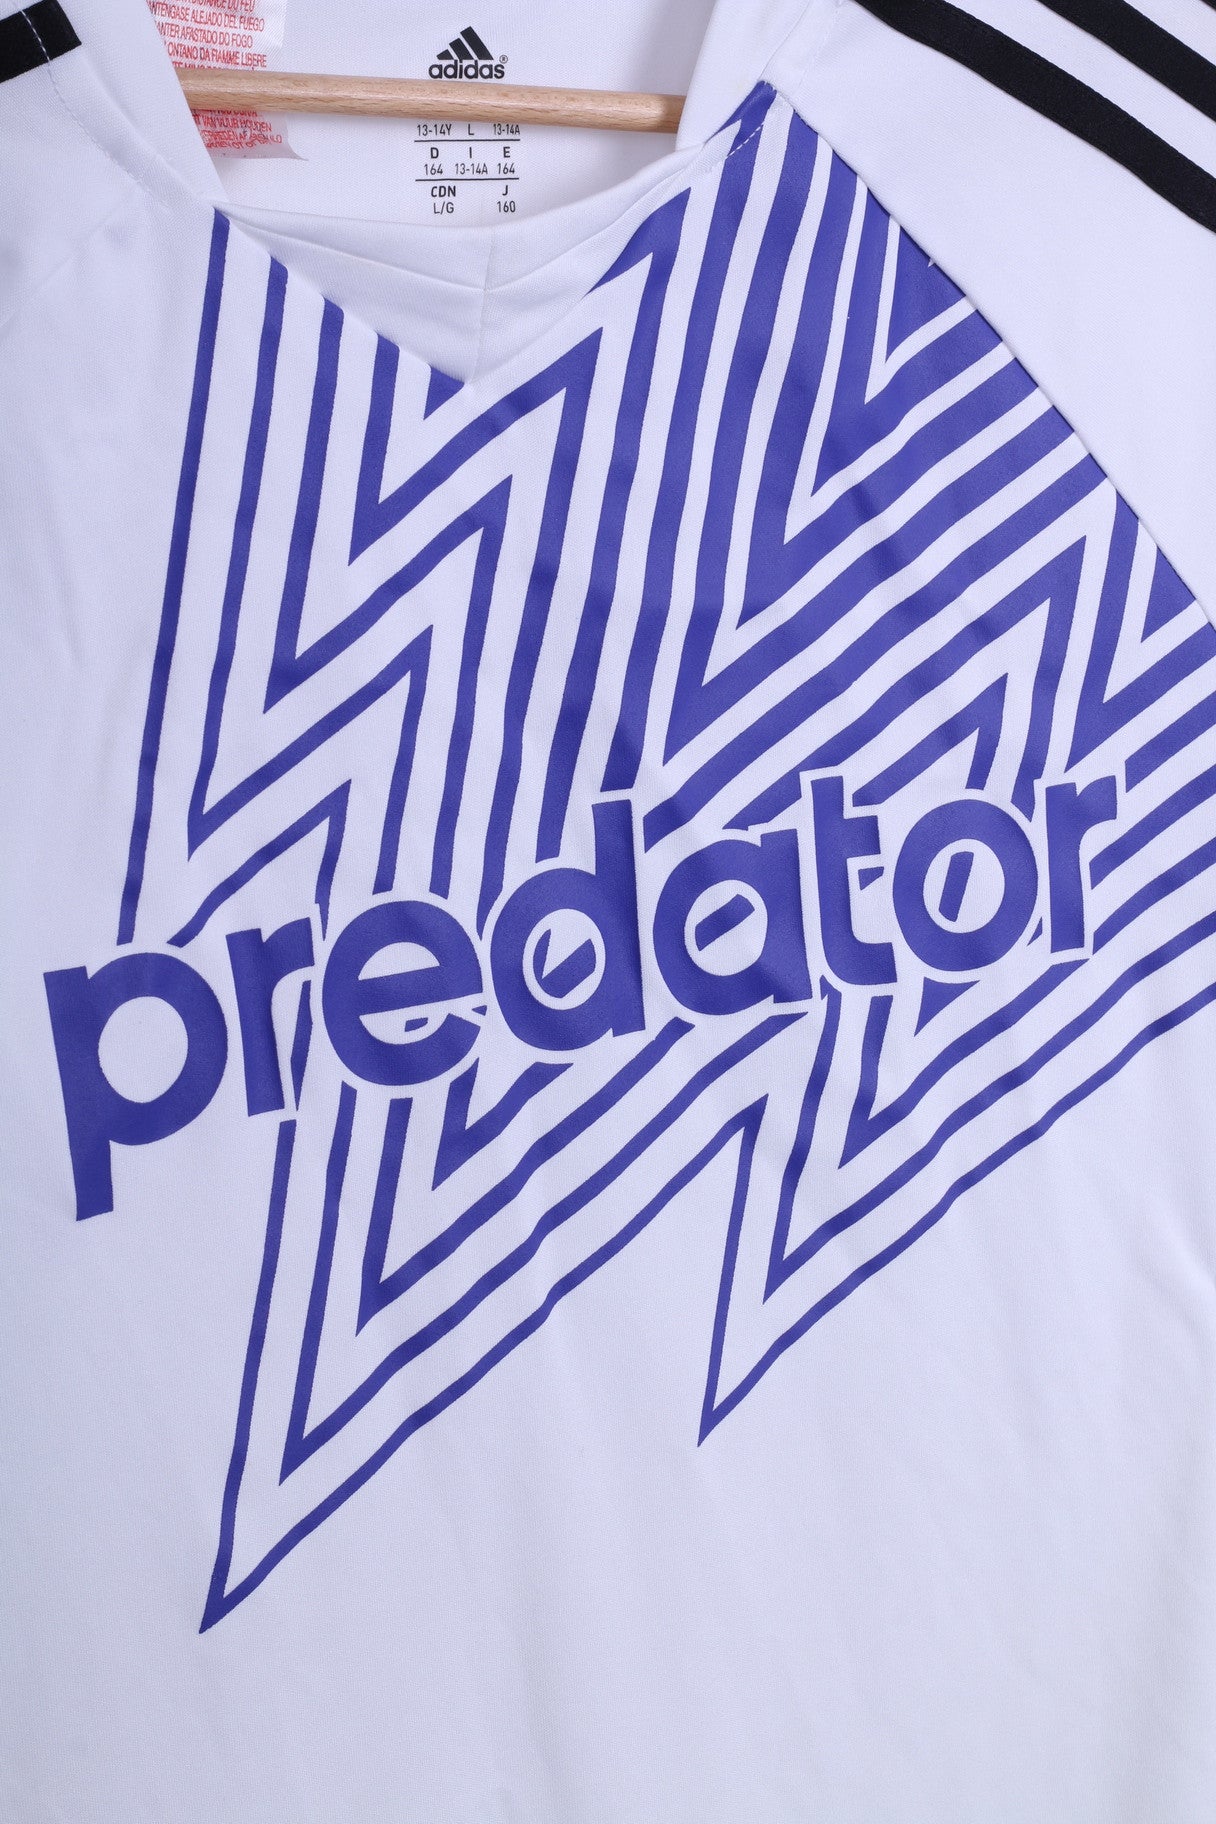 Adidas Predator Boys 13-14 Year Shirt Football Club Sport